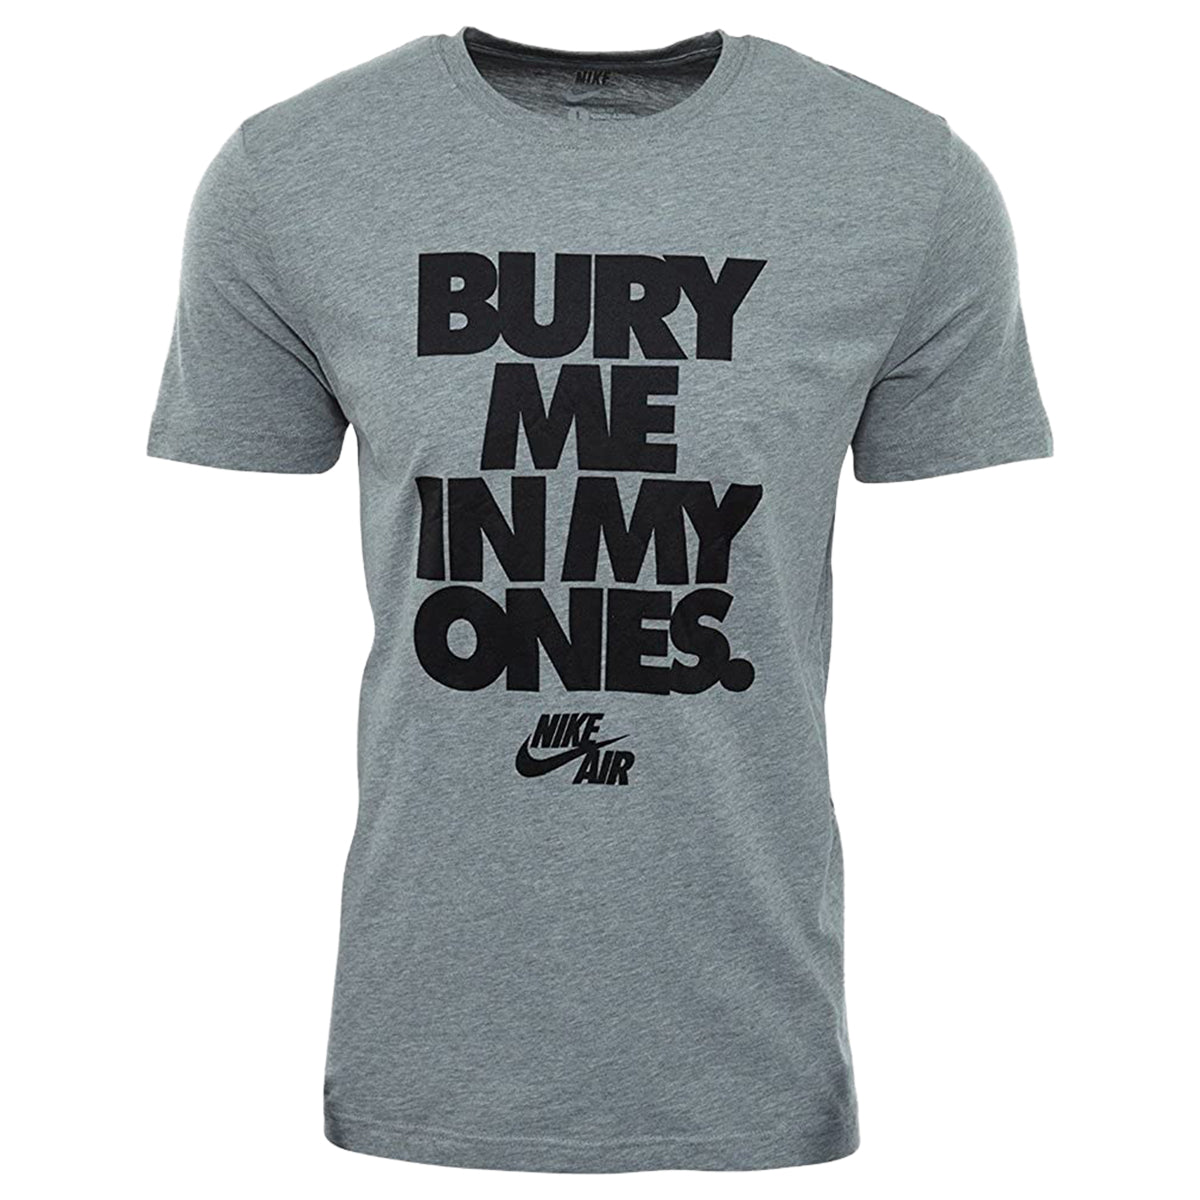 Nike Bury Me In My Ones Tee Mens Style : 457825